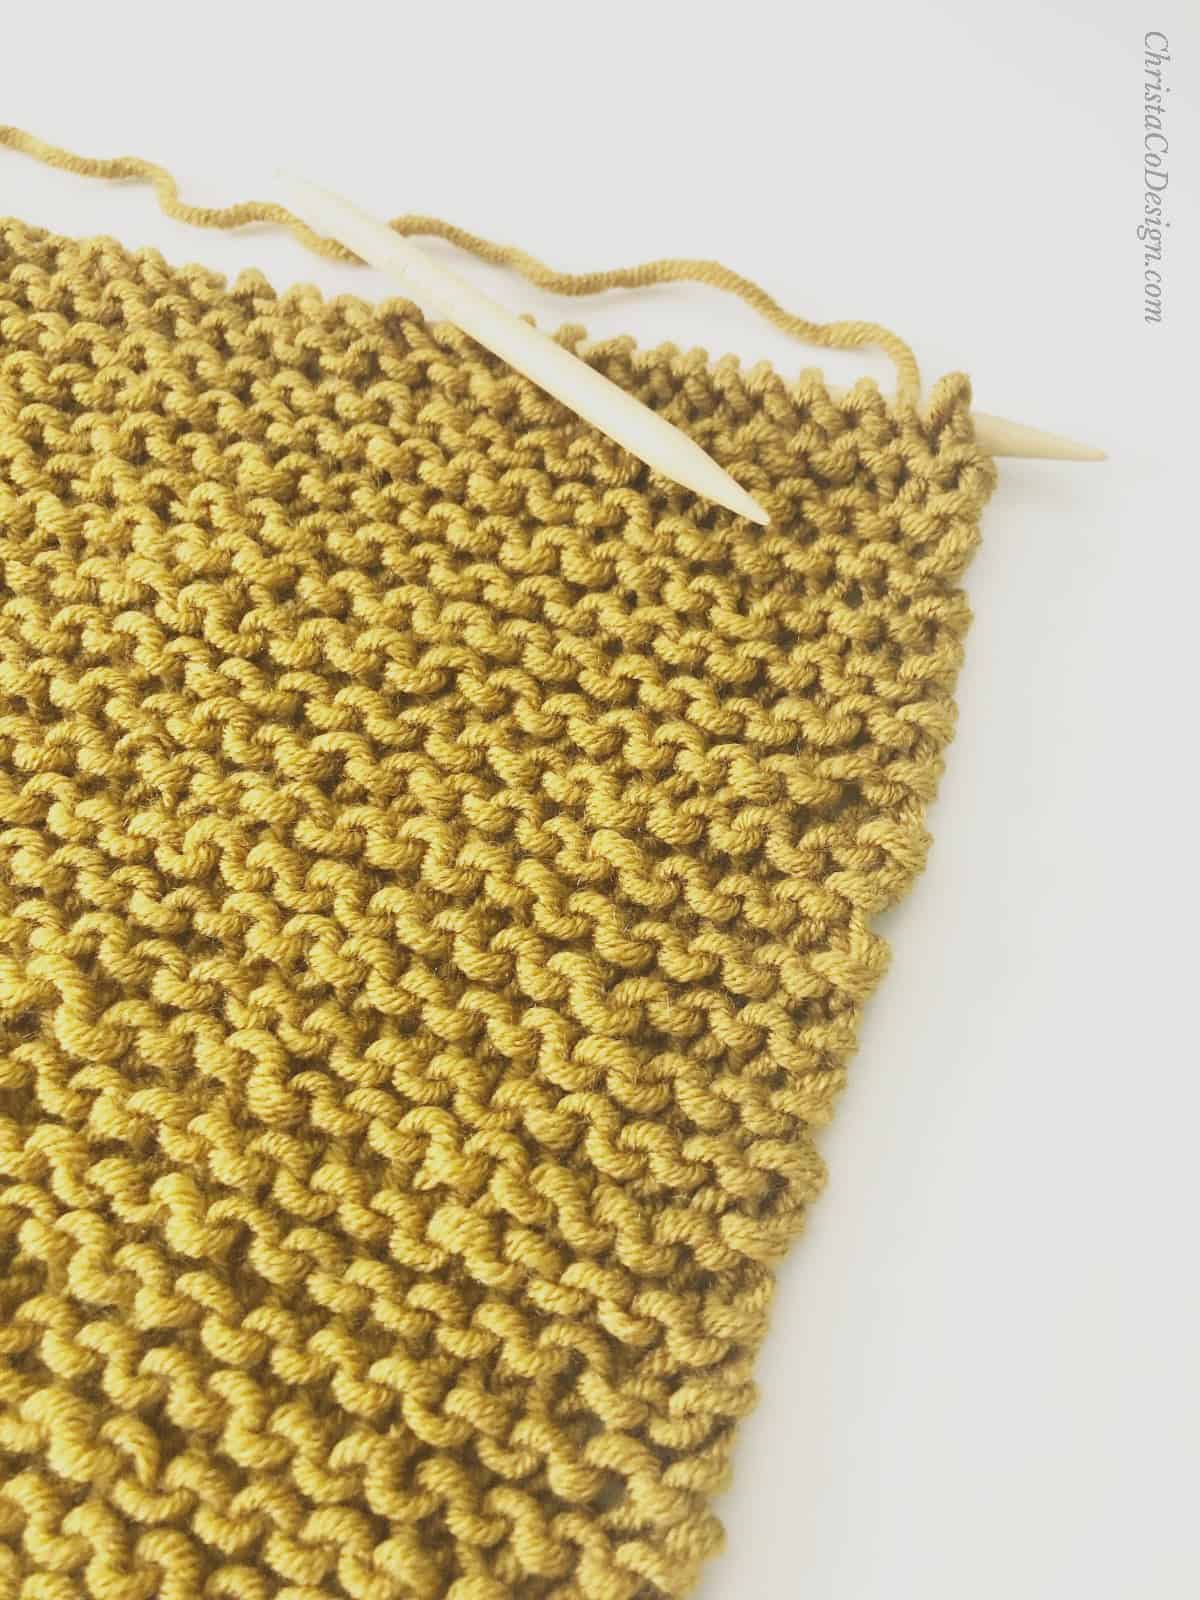 Mustard yellow garter stitch shawl on knitting needles.